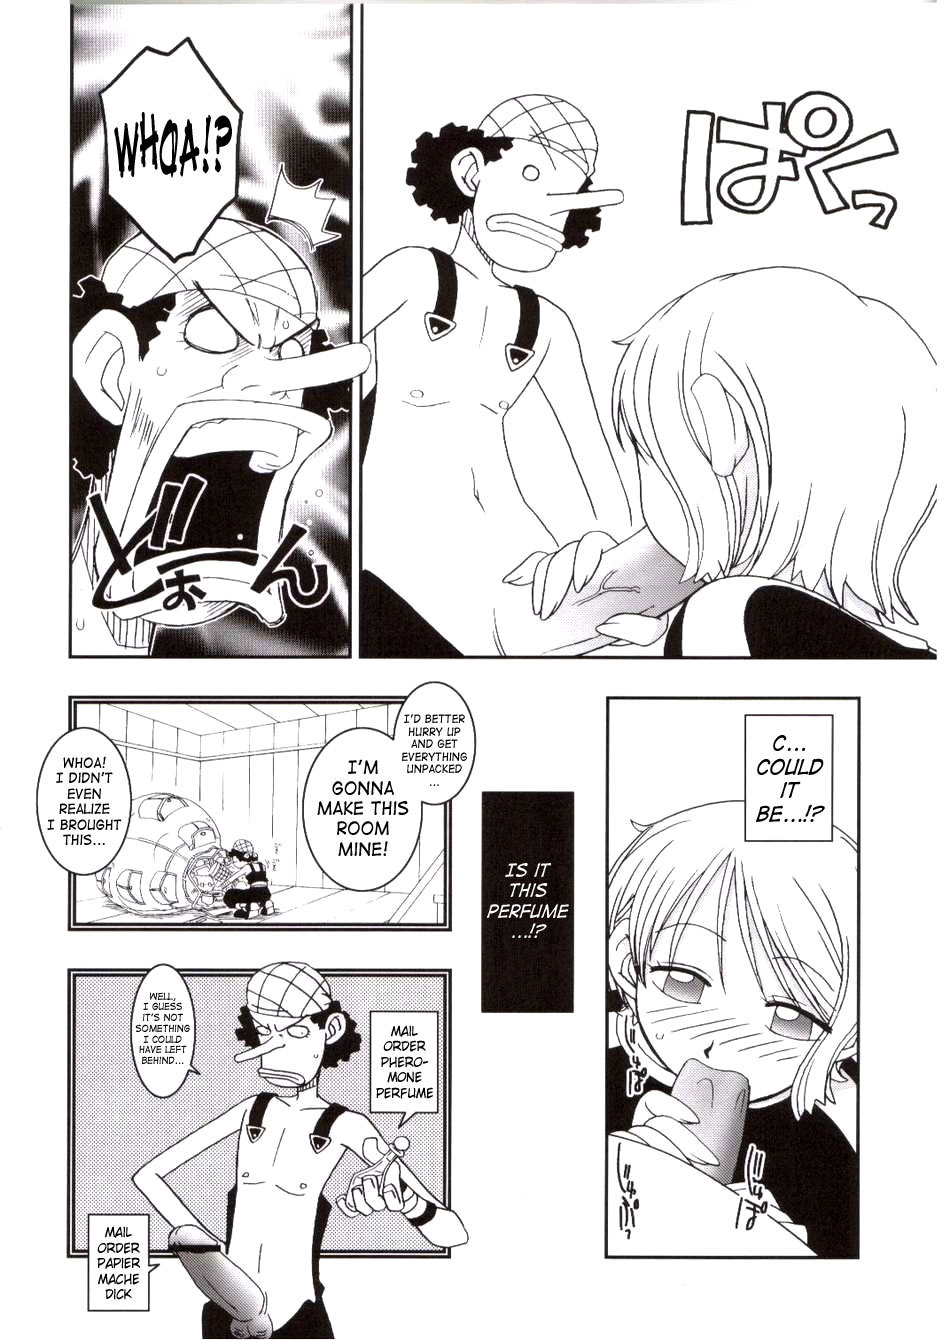 ORANGE PIE Vol.3 one piece 10 hentai manga